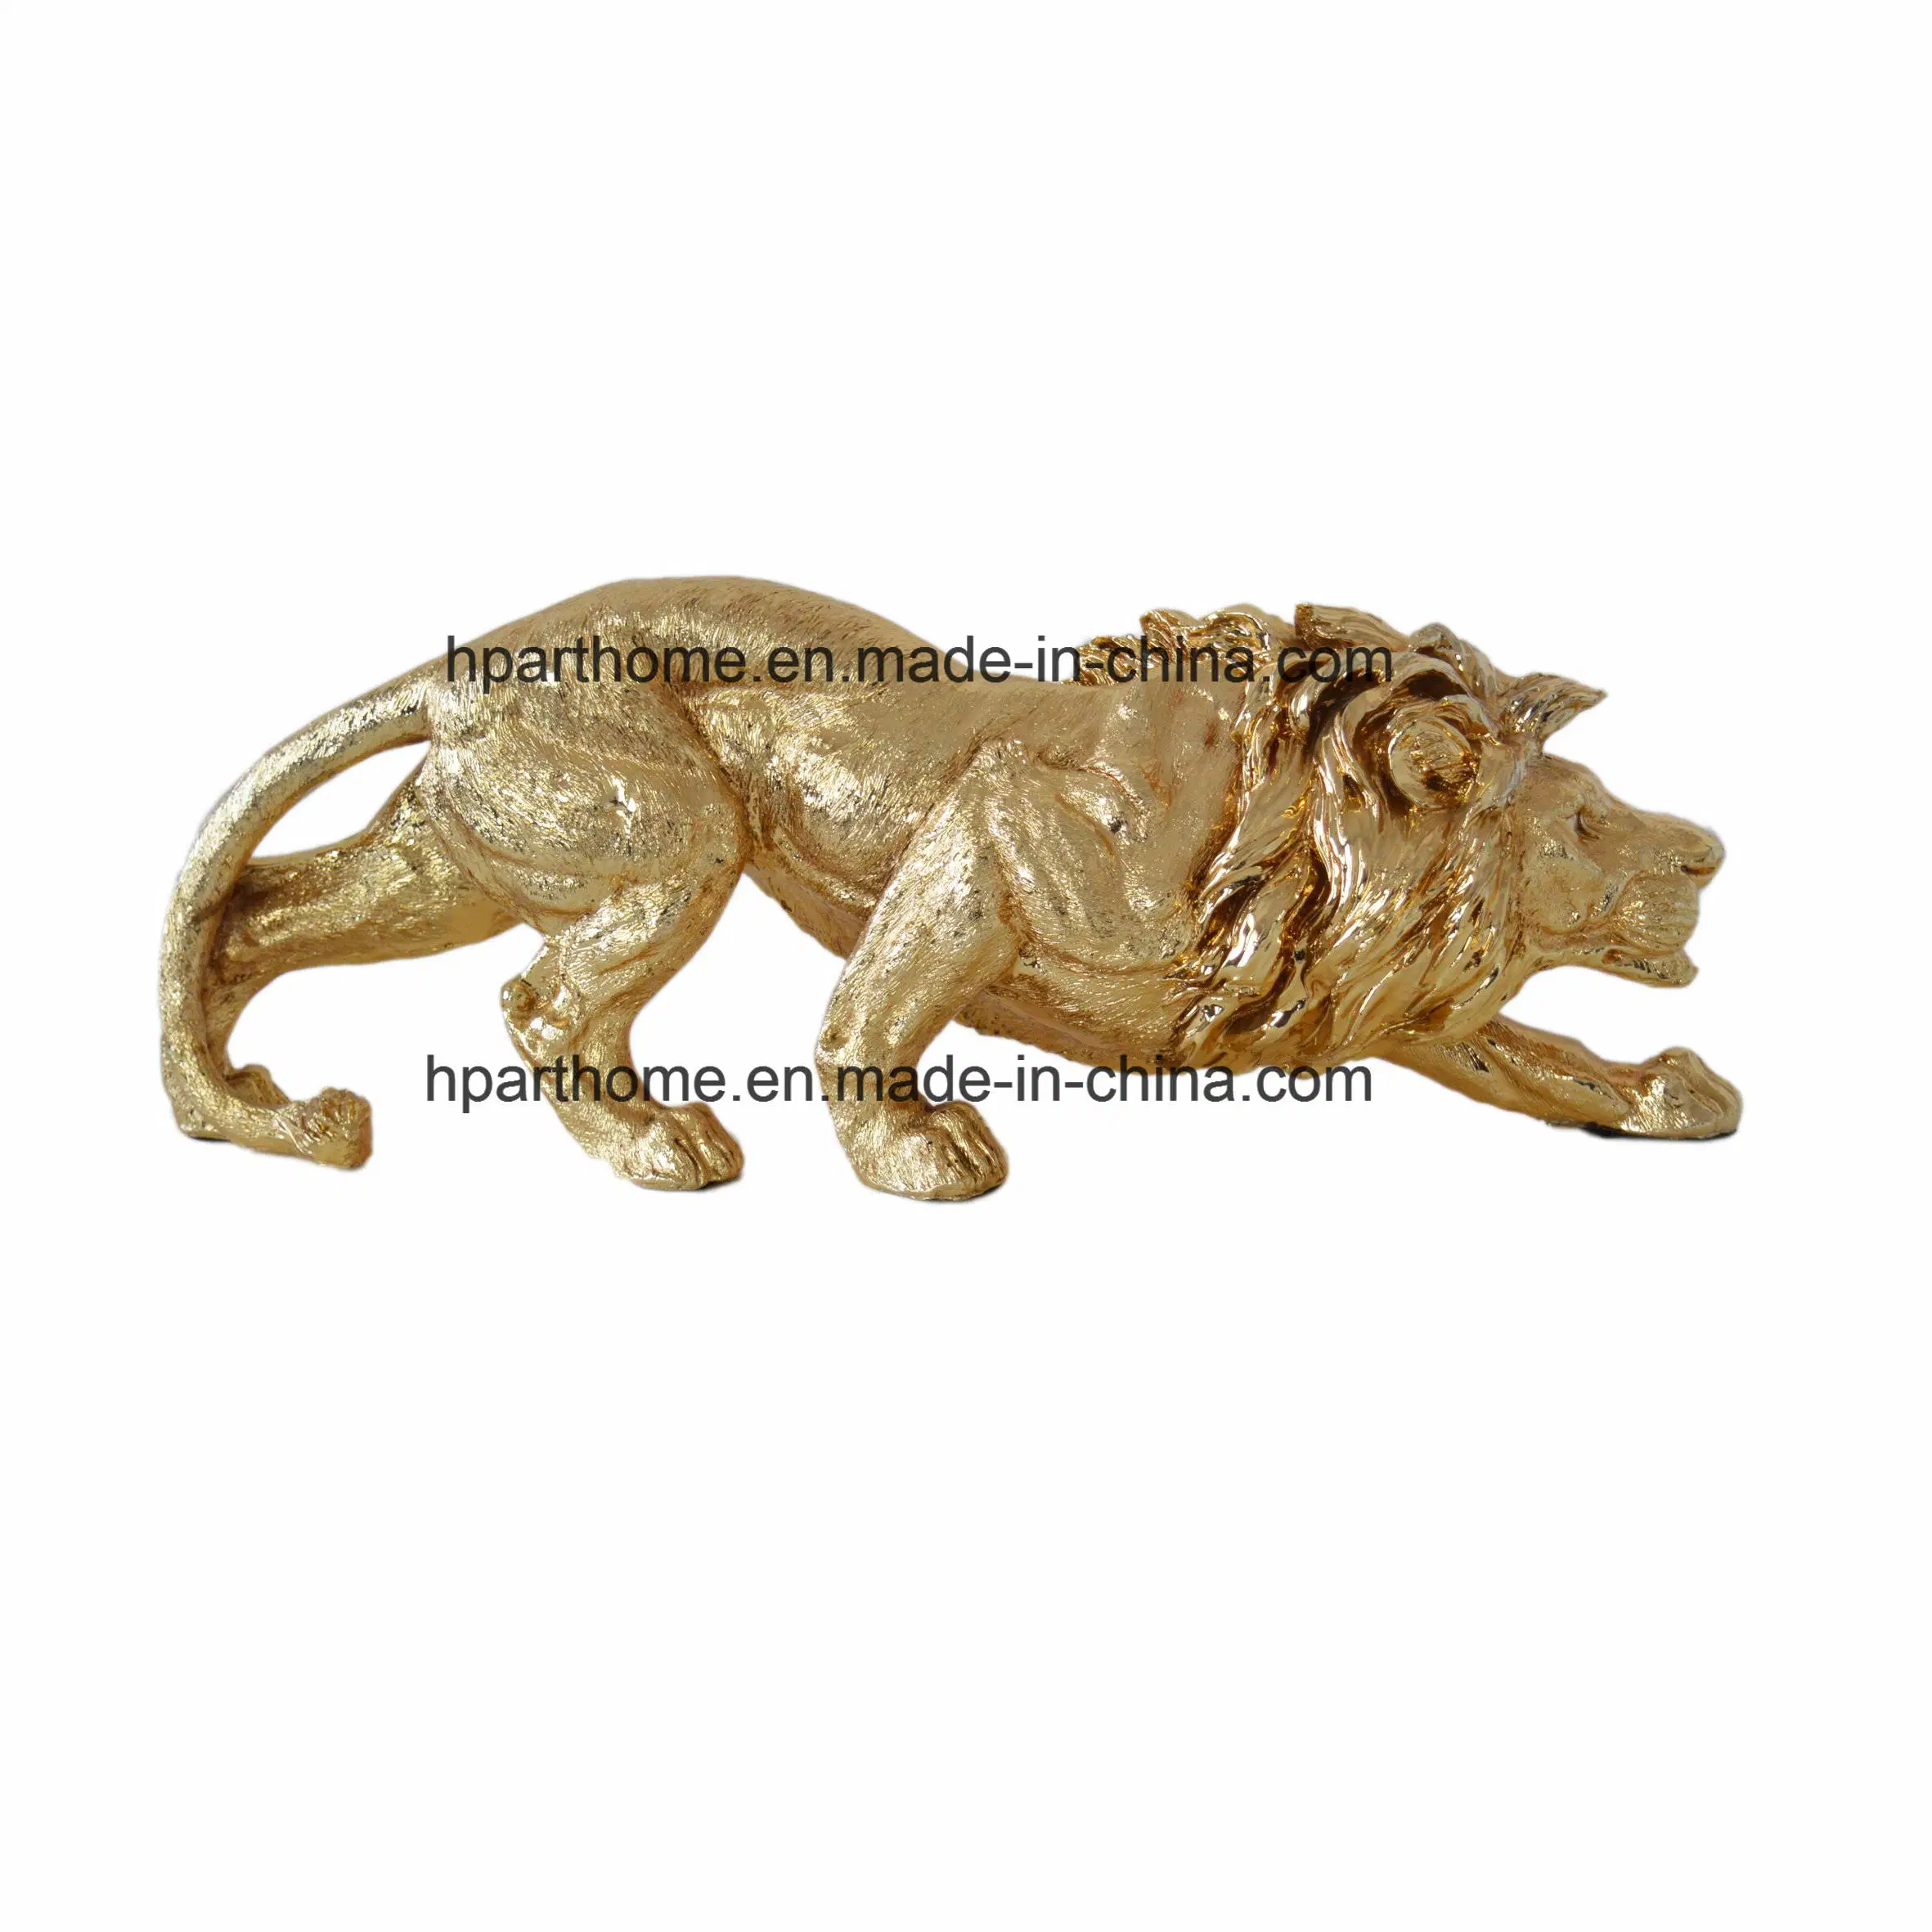 La decoración de la resina León escultura resina regalos artesanales souvenirs decoración Polyresin